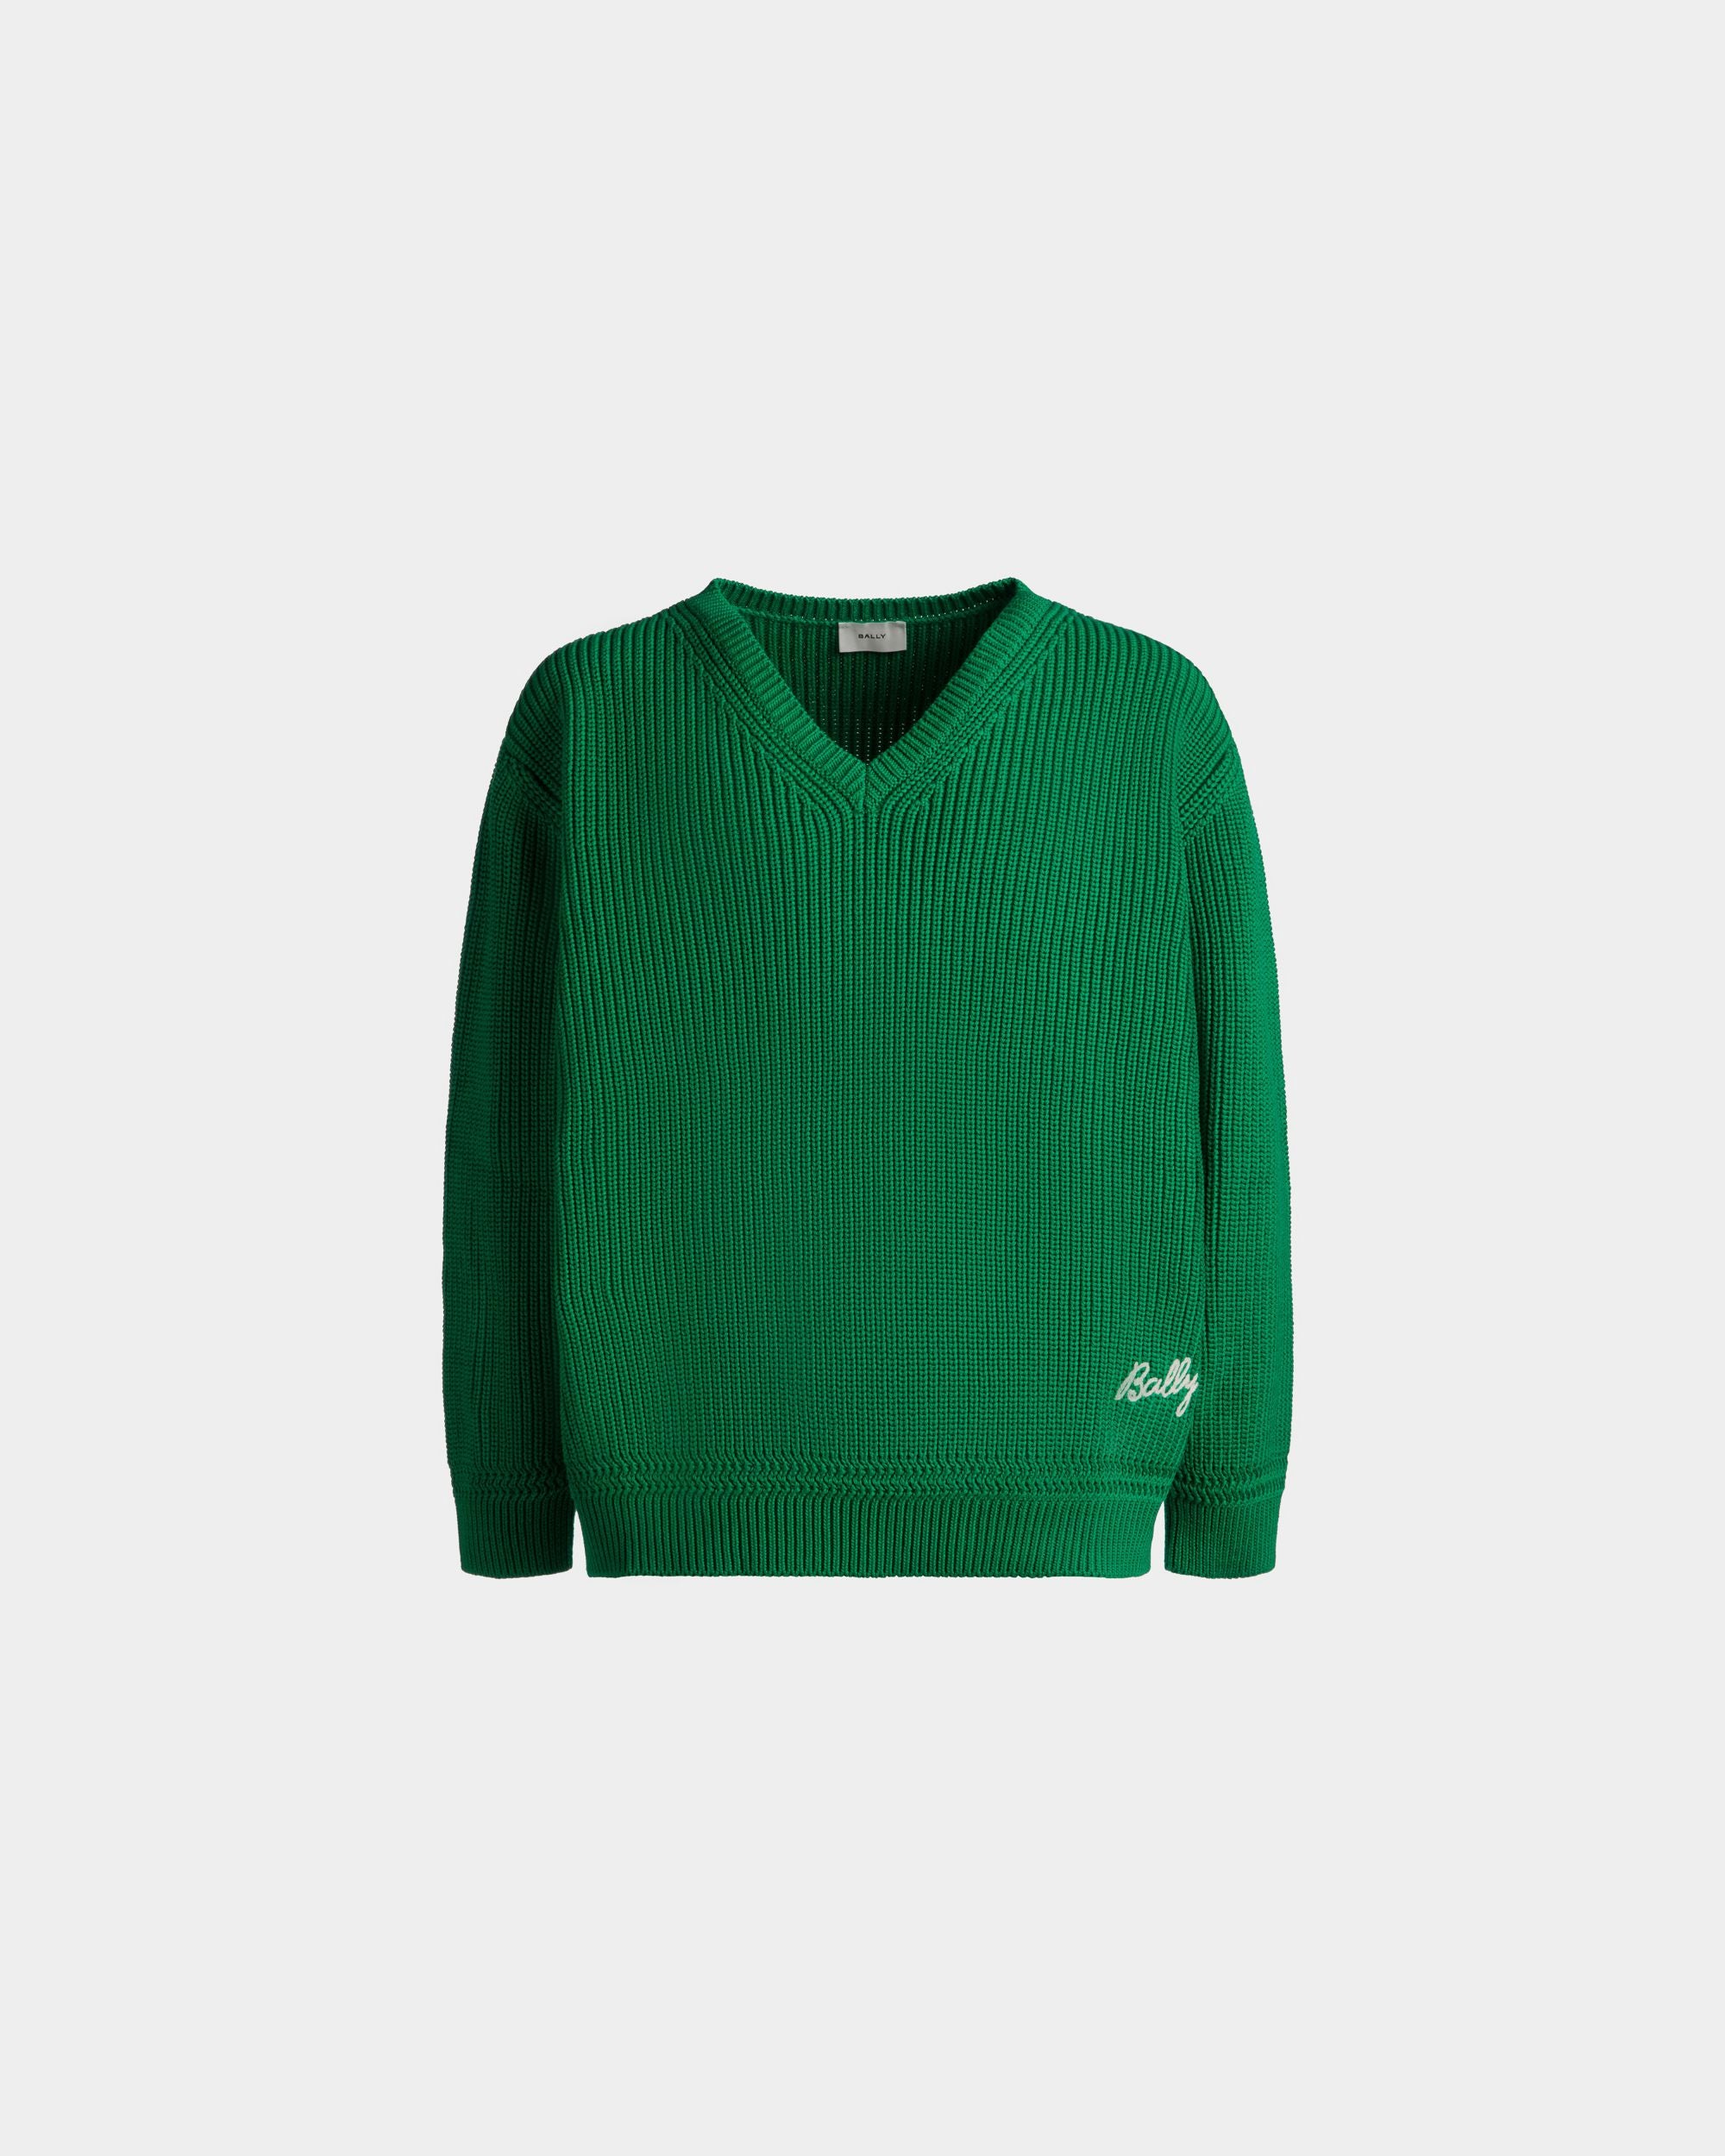 Pullover mit V-Ausschnitt für Herren aus Baumwolle in Grün | Bally | Still Life Vorderseite